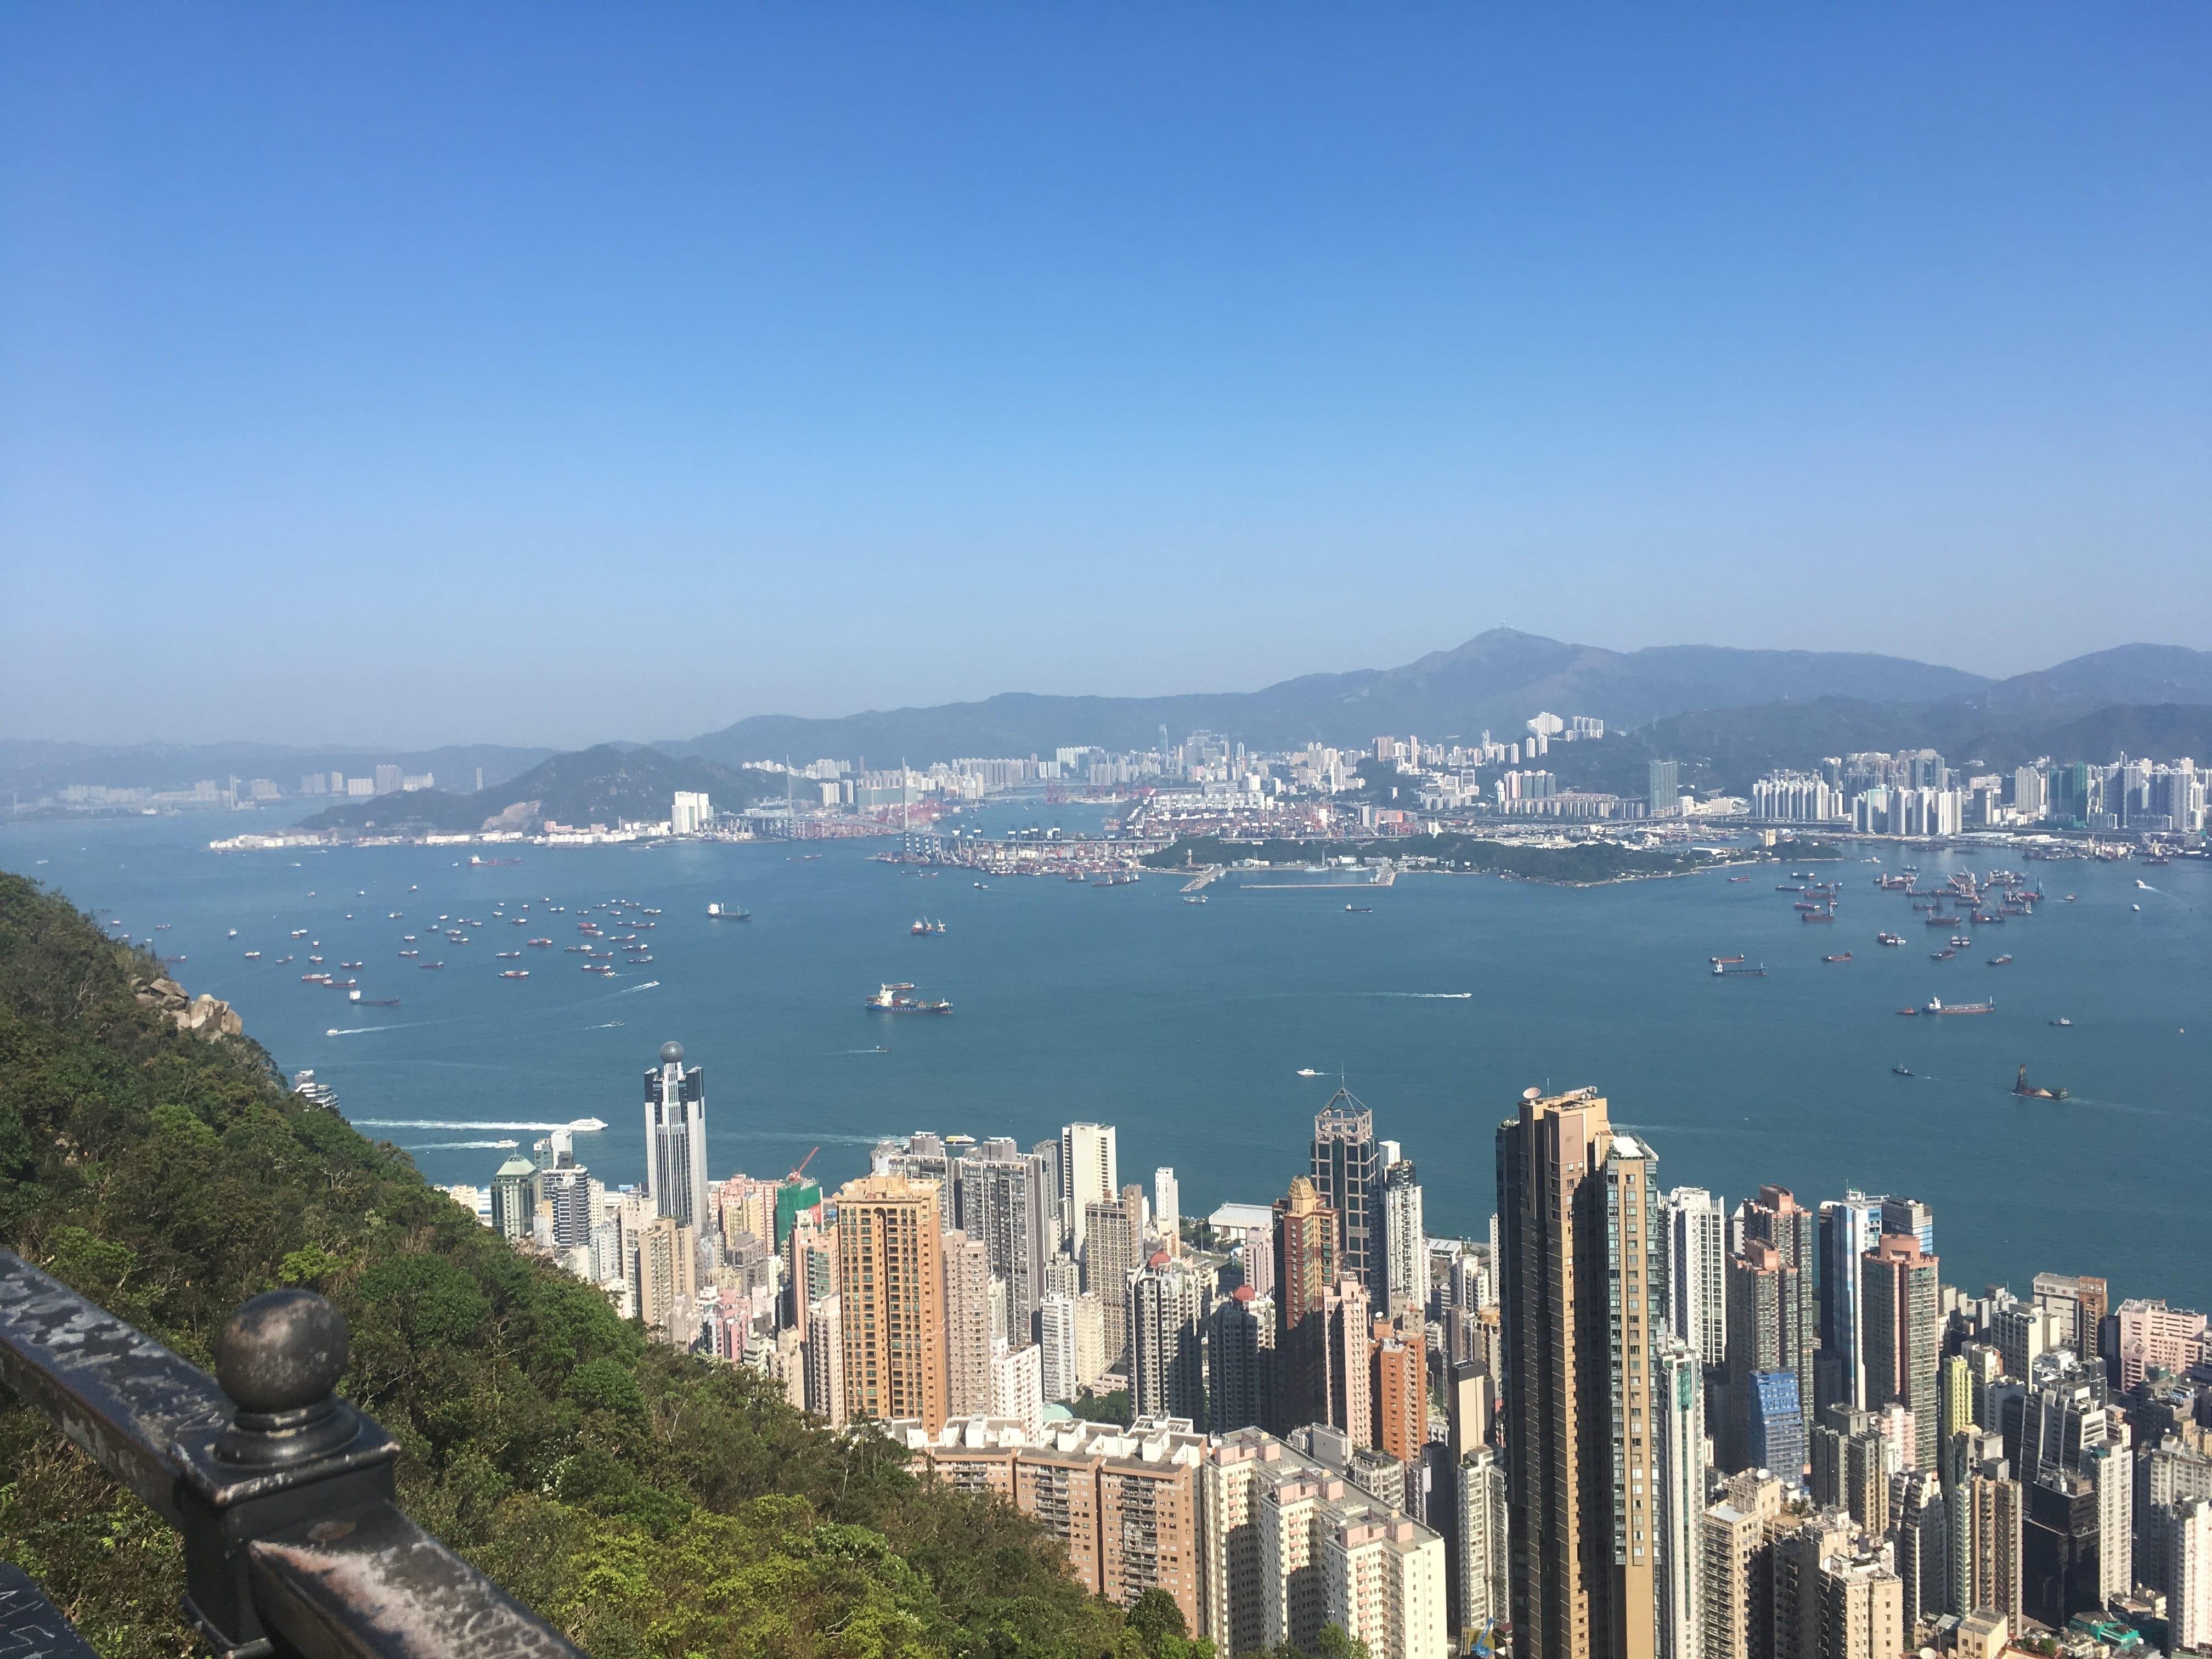 The bay of Hong Kong